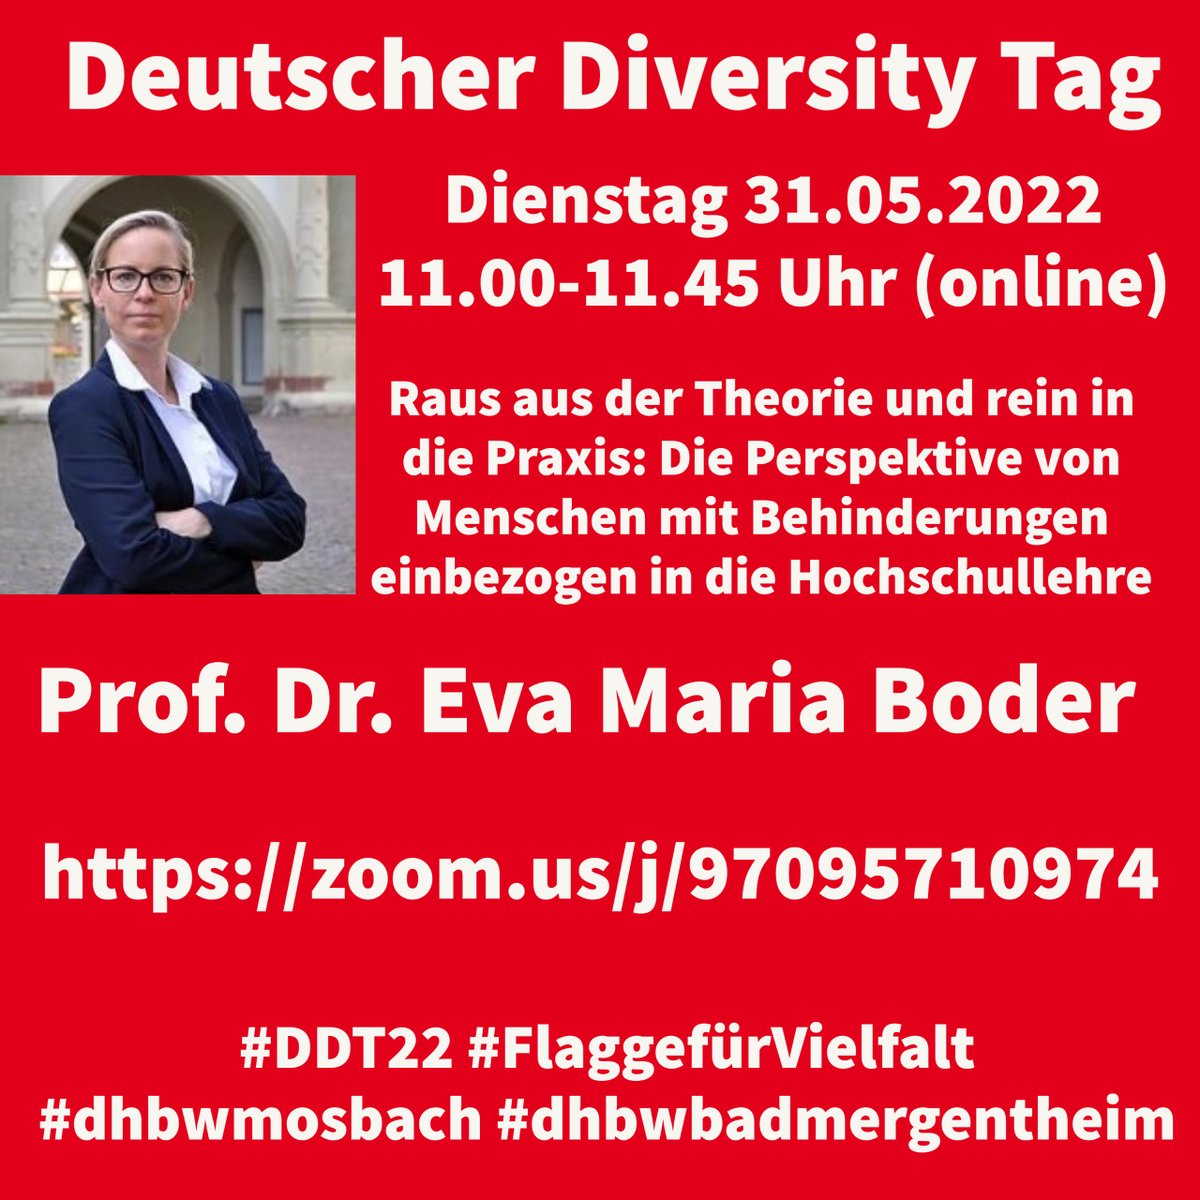 #DHBW #Mosbach/#BadMergentheim - sind dabei beim Deutschen Diversity Tag 2022. Online Session #2 zum Thema Diversity in der Hochschullehre. Wir freuen und über alle Teilnehmer*innen.
#CelebrateDiversity #DDT22 #FlaggefürVielfalt #diversity